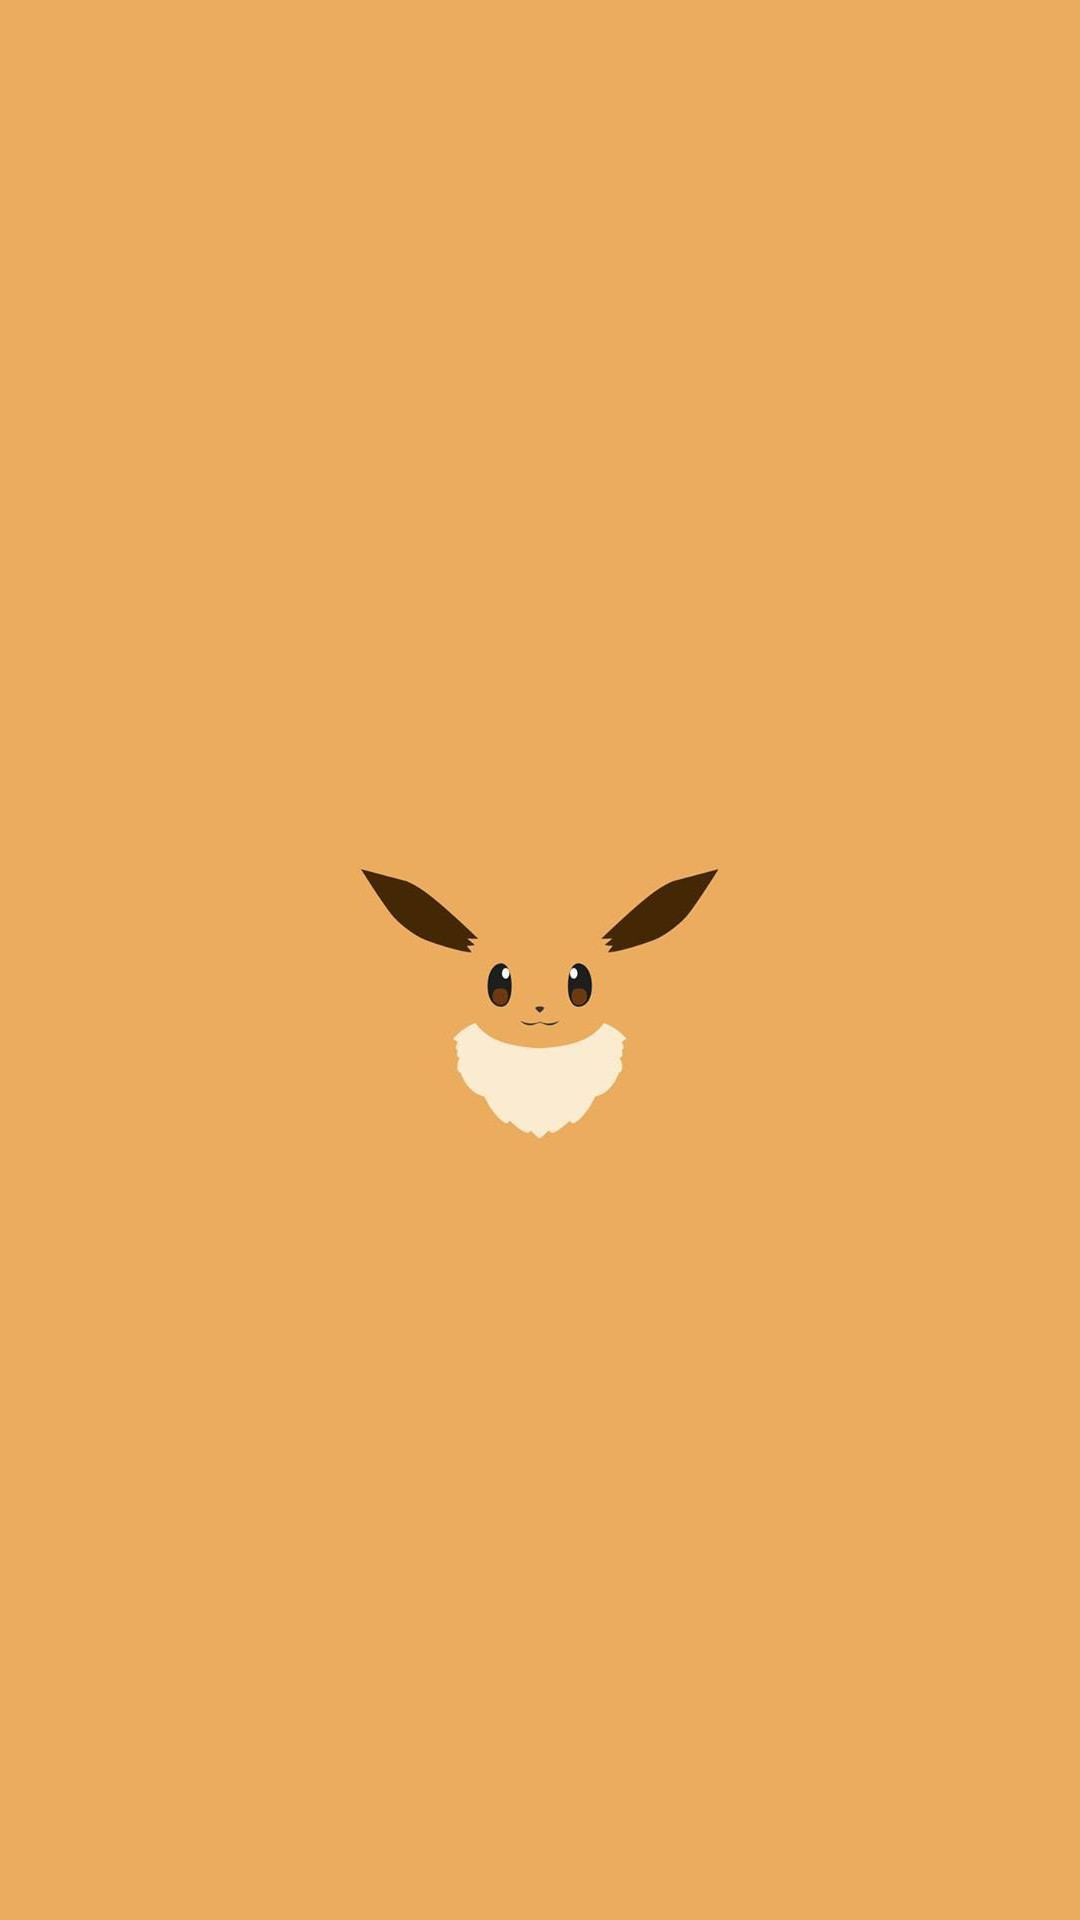 1080x1920 Eevee Pokemon Character iPhone 6+ HD Wallpaper - http://freebestpicture.com